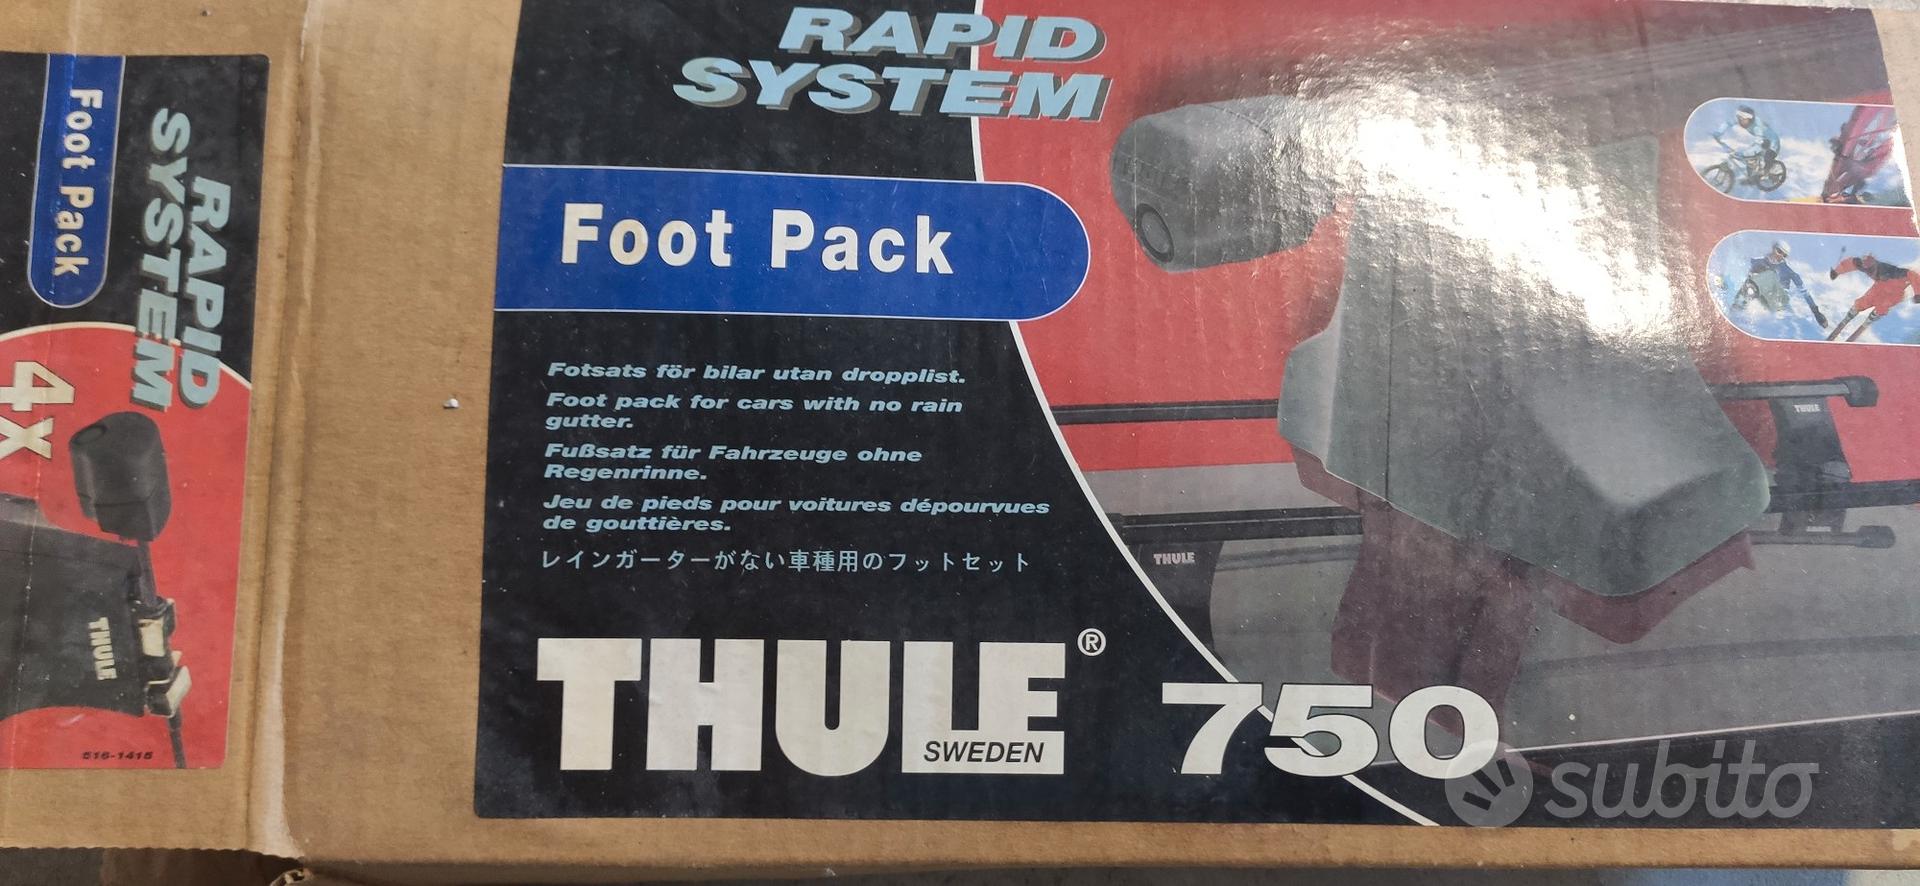 piedini Thule foot pack 750-Rapid system - Accessori Auto In